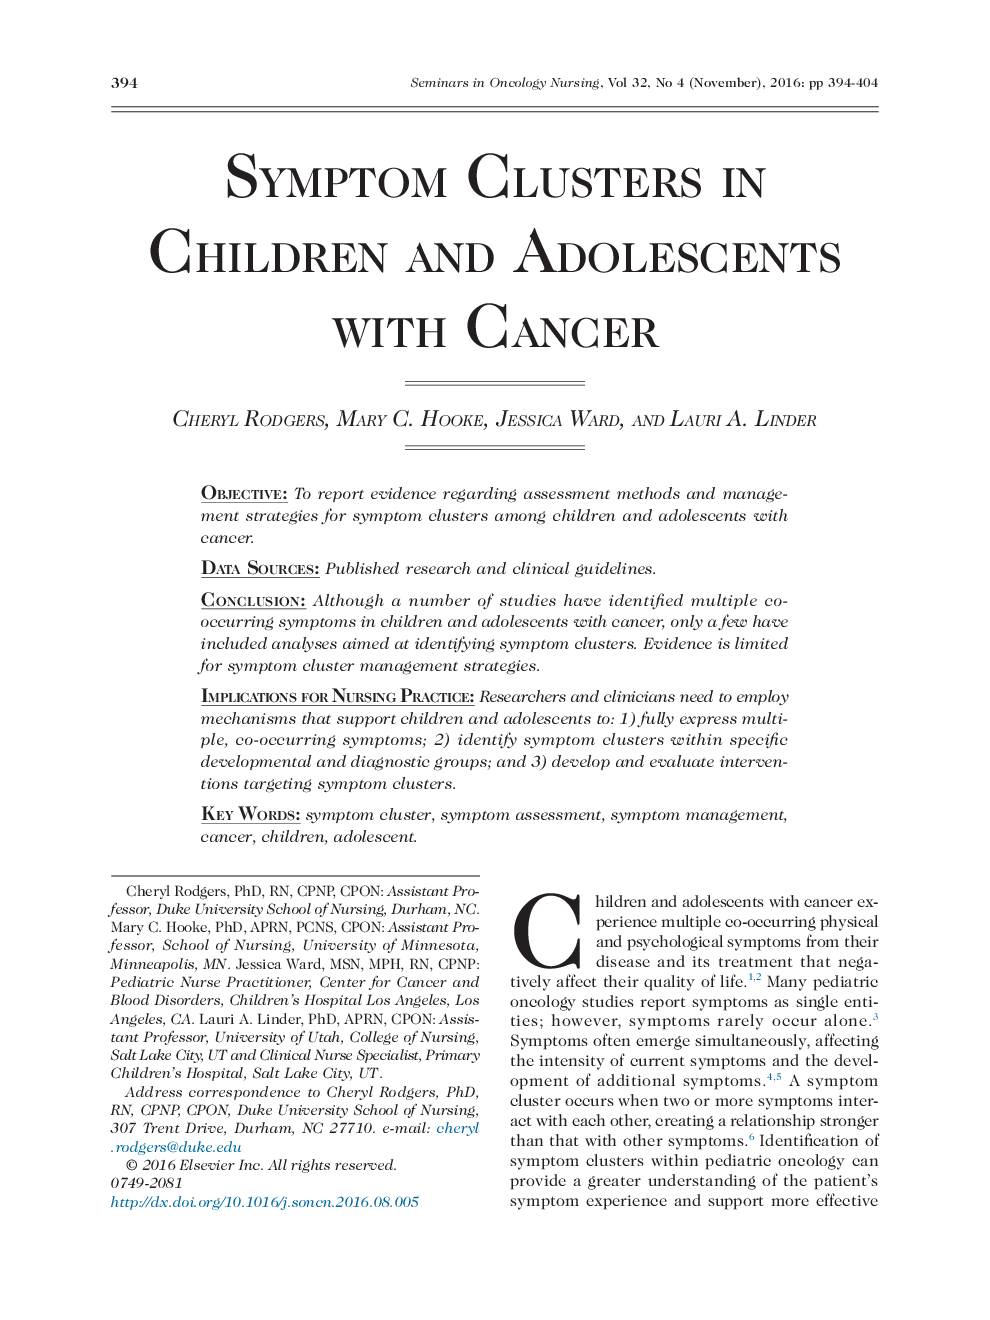 خوشه های علائم در کودکان و نوجوانان مبتلا به سرطان 